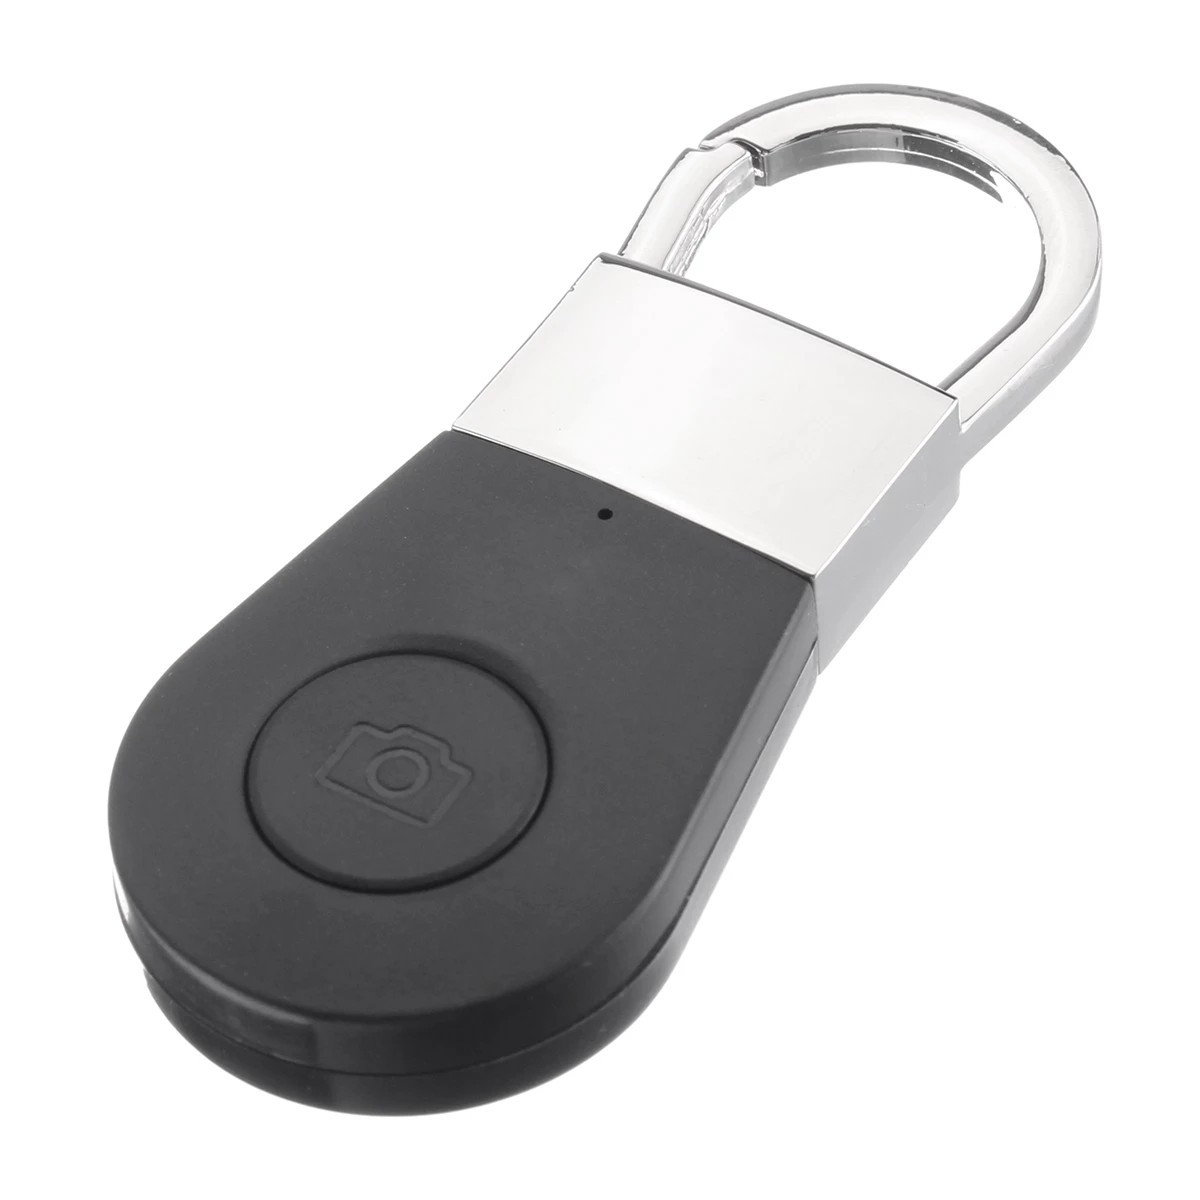 Wyszukiwarka kluczy - wyszukiwarka bluetooth do kluczy, telefonu komórkowego itp